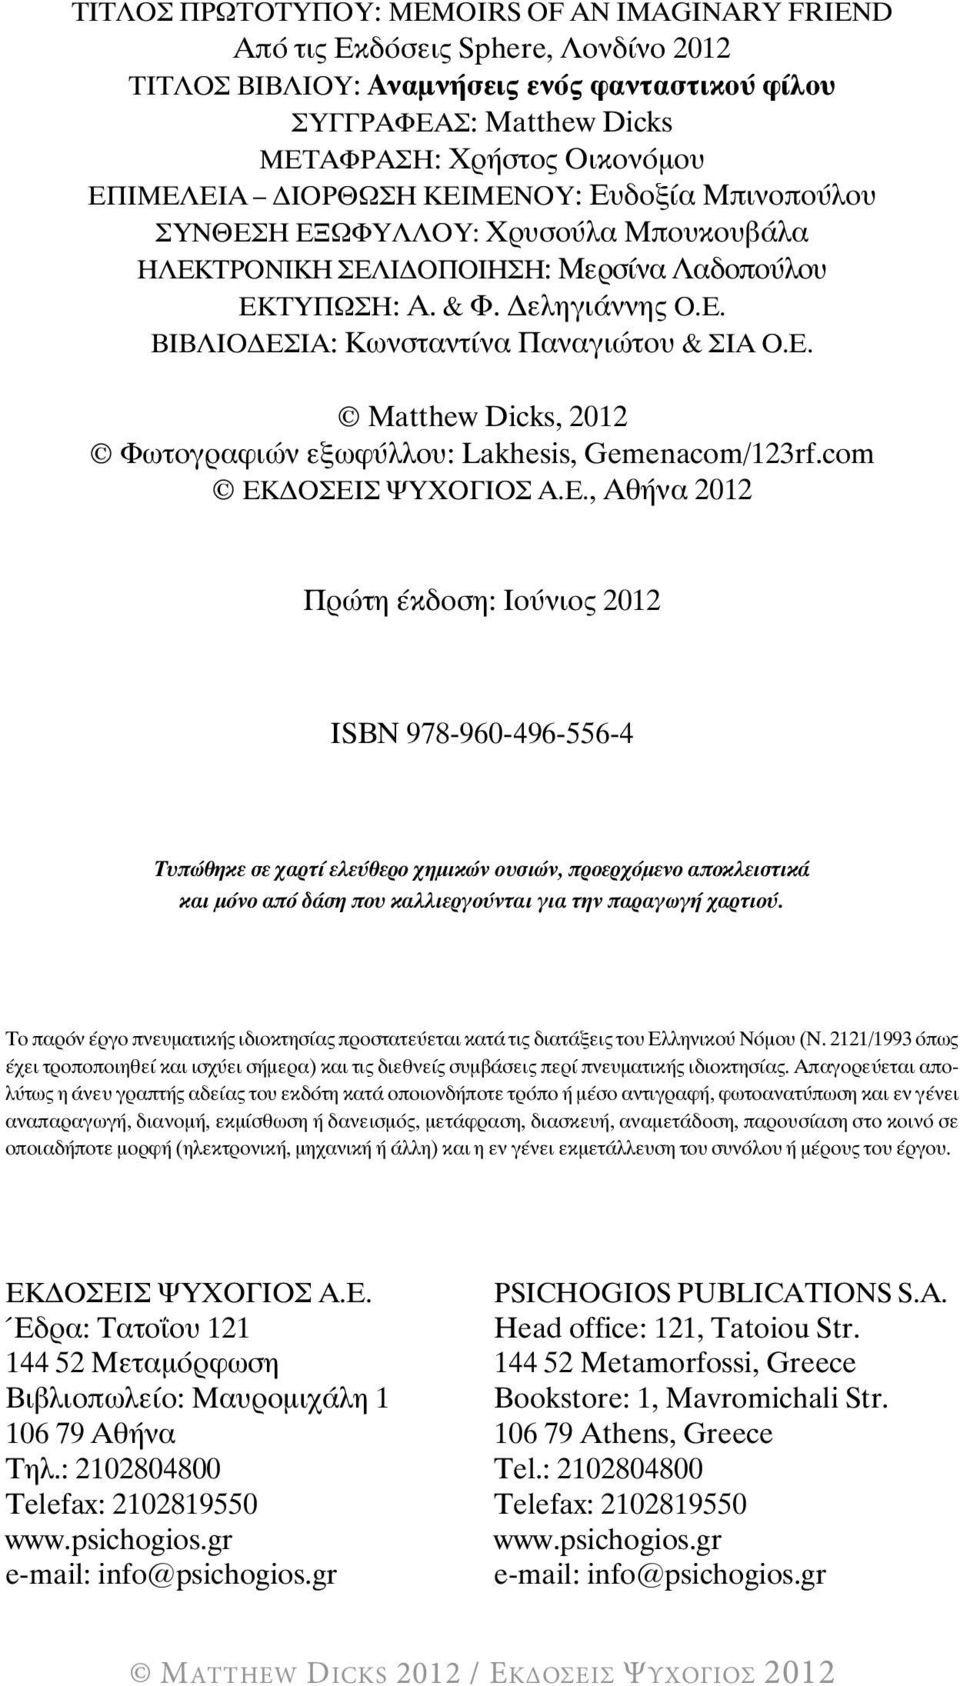 ε. Matthew Dicks, 2012 φωτογραφιών εξωφύλλου: Lakhesis, Gemenacom/123rf.com ΕκΔοσΕισ ΨΥΧογιοσ α.ε., αθήνα 2012 Πρώτη έκδοση: ιούνιος 2012 ιsbn 978-960-496-556-4 Τυπώθηκε σε χαρτί ελεύθερο χημικών ουσιών, προερχόμενο αποκλειστικά και μόνο από δάση που καλλιεργούνται για την παραγωγή χαρτιού.